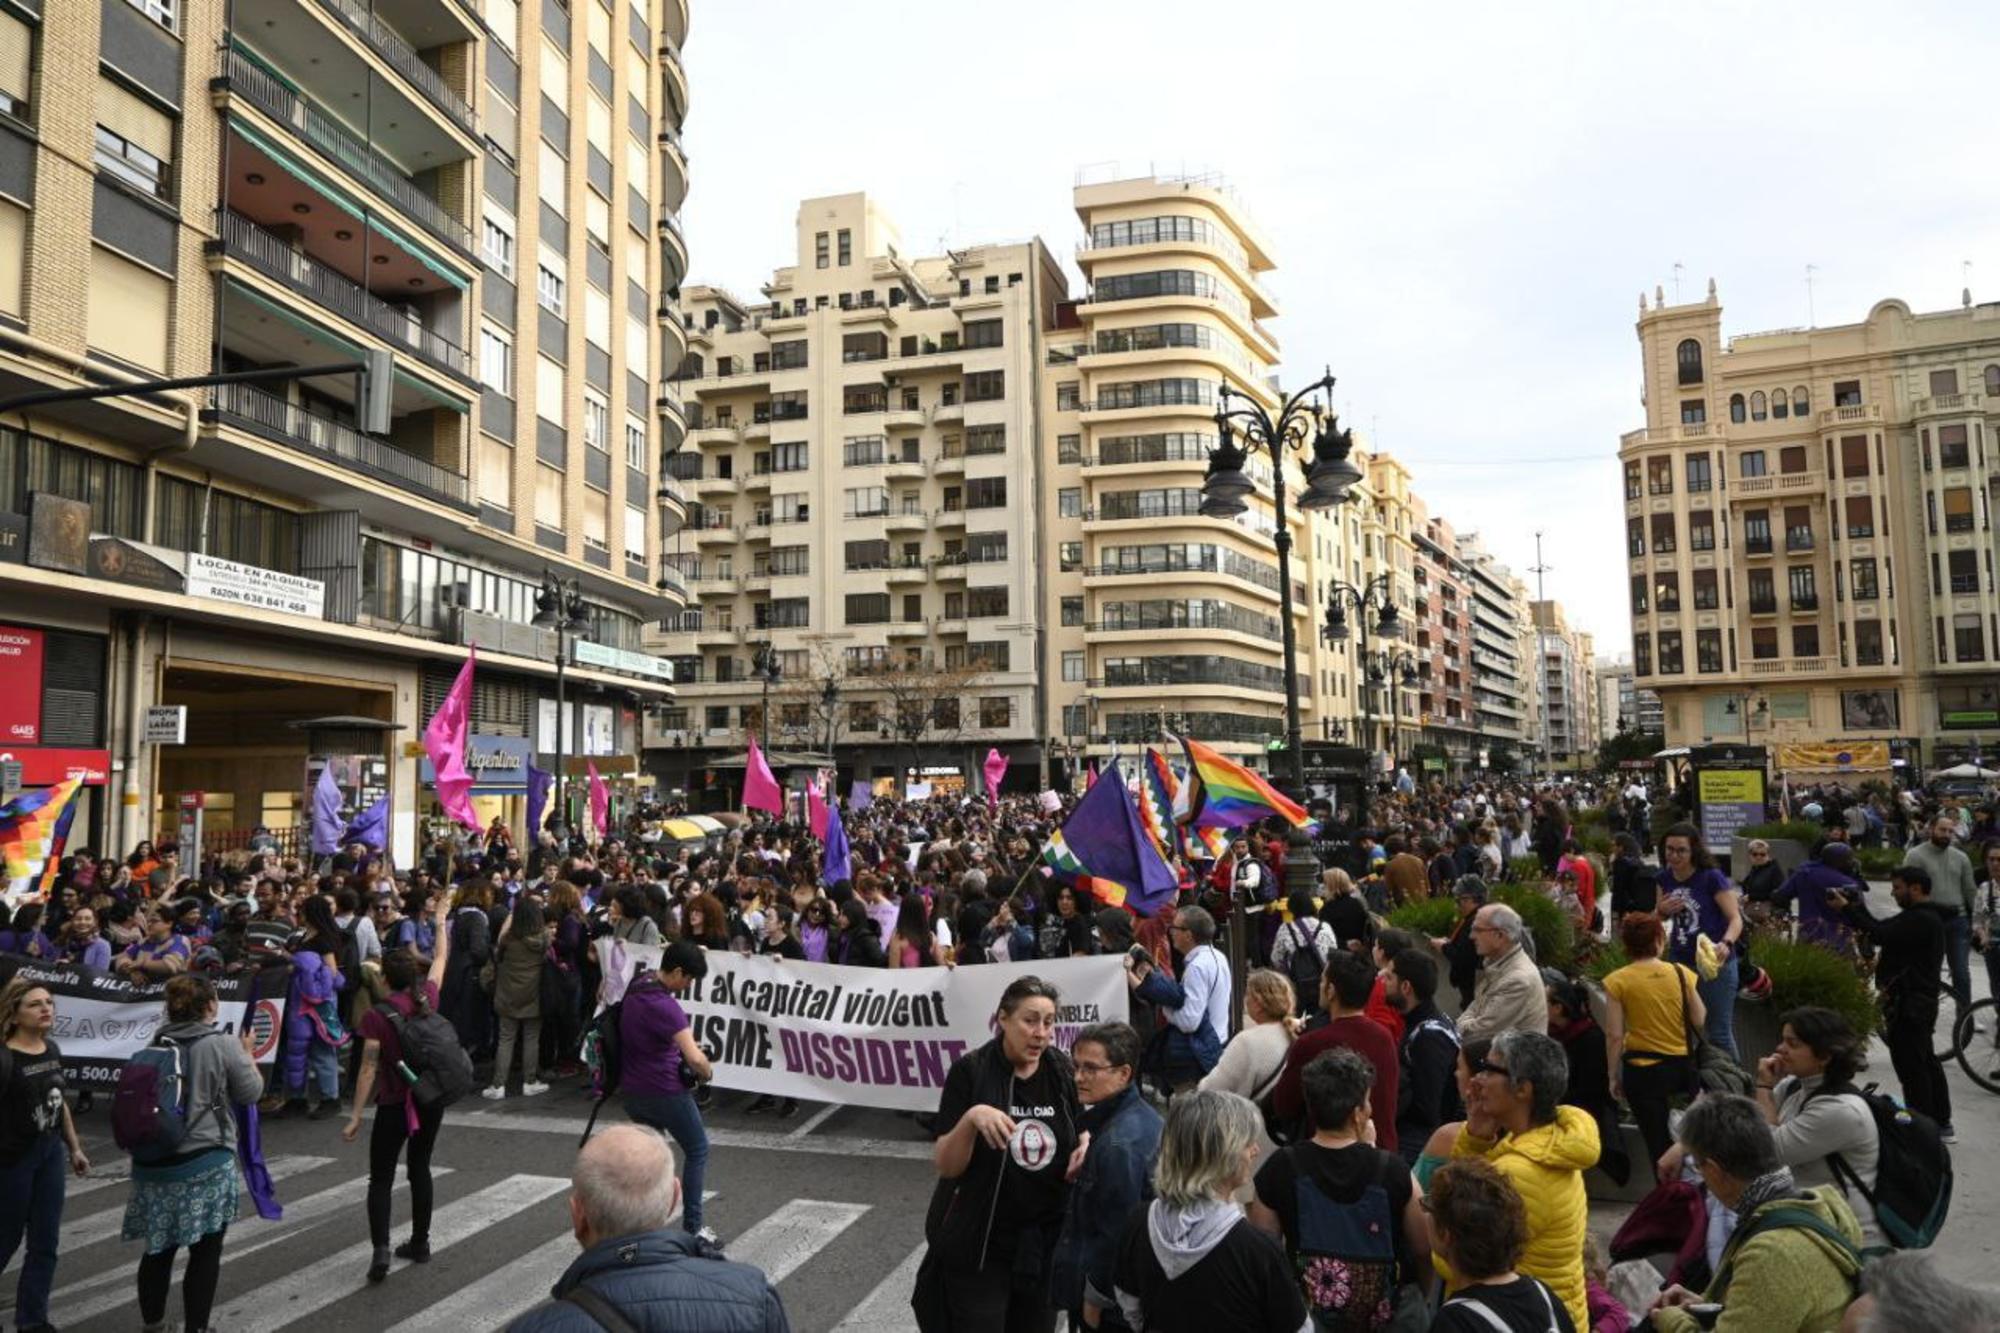 8M en Valencia: la manifestación se detiene en la Plaça San Agustí